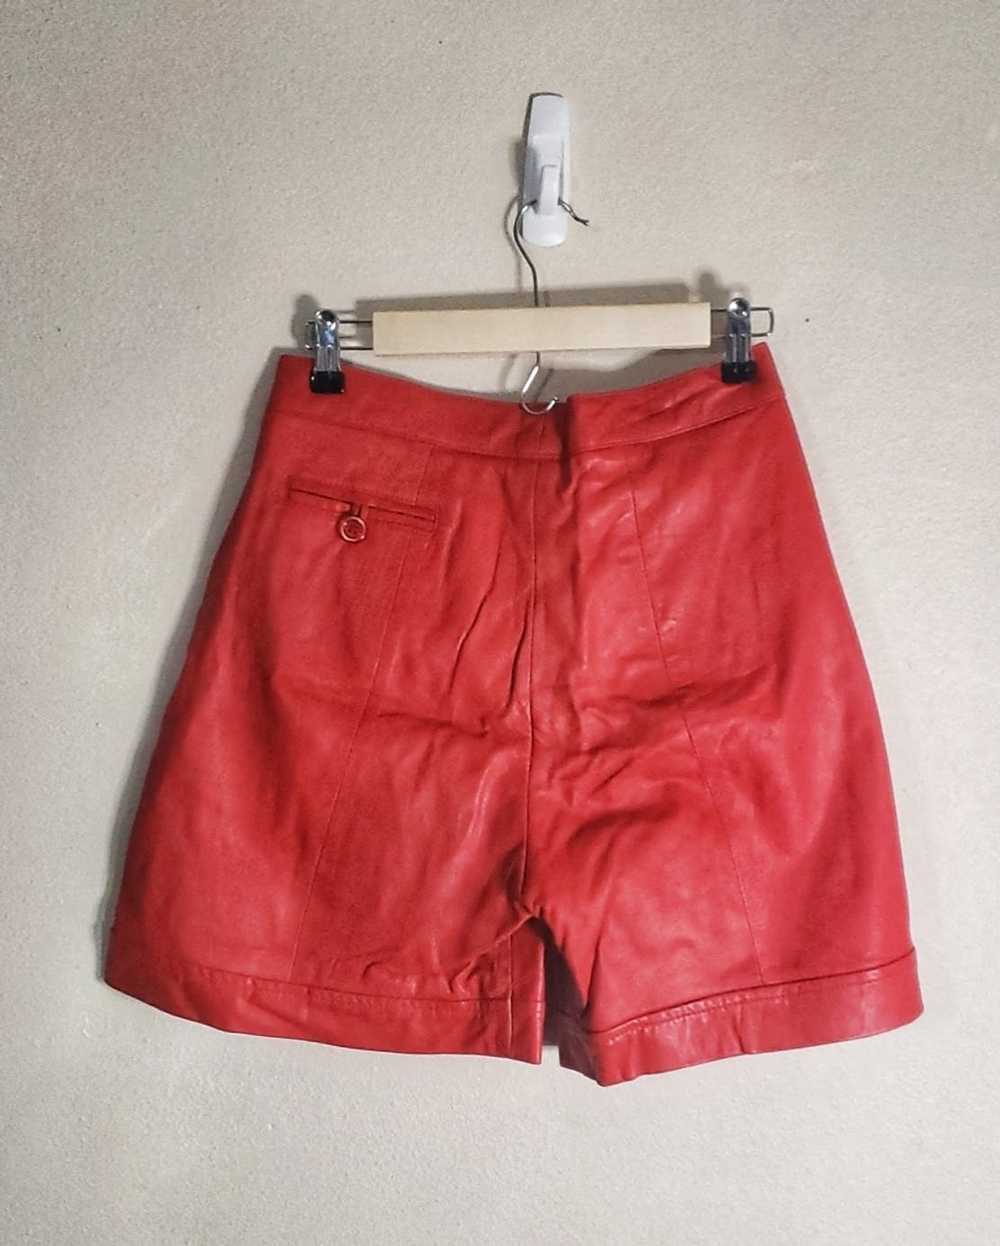 Vintage Vintage 80s Red Leather Shorts - image 4